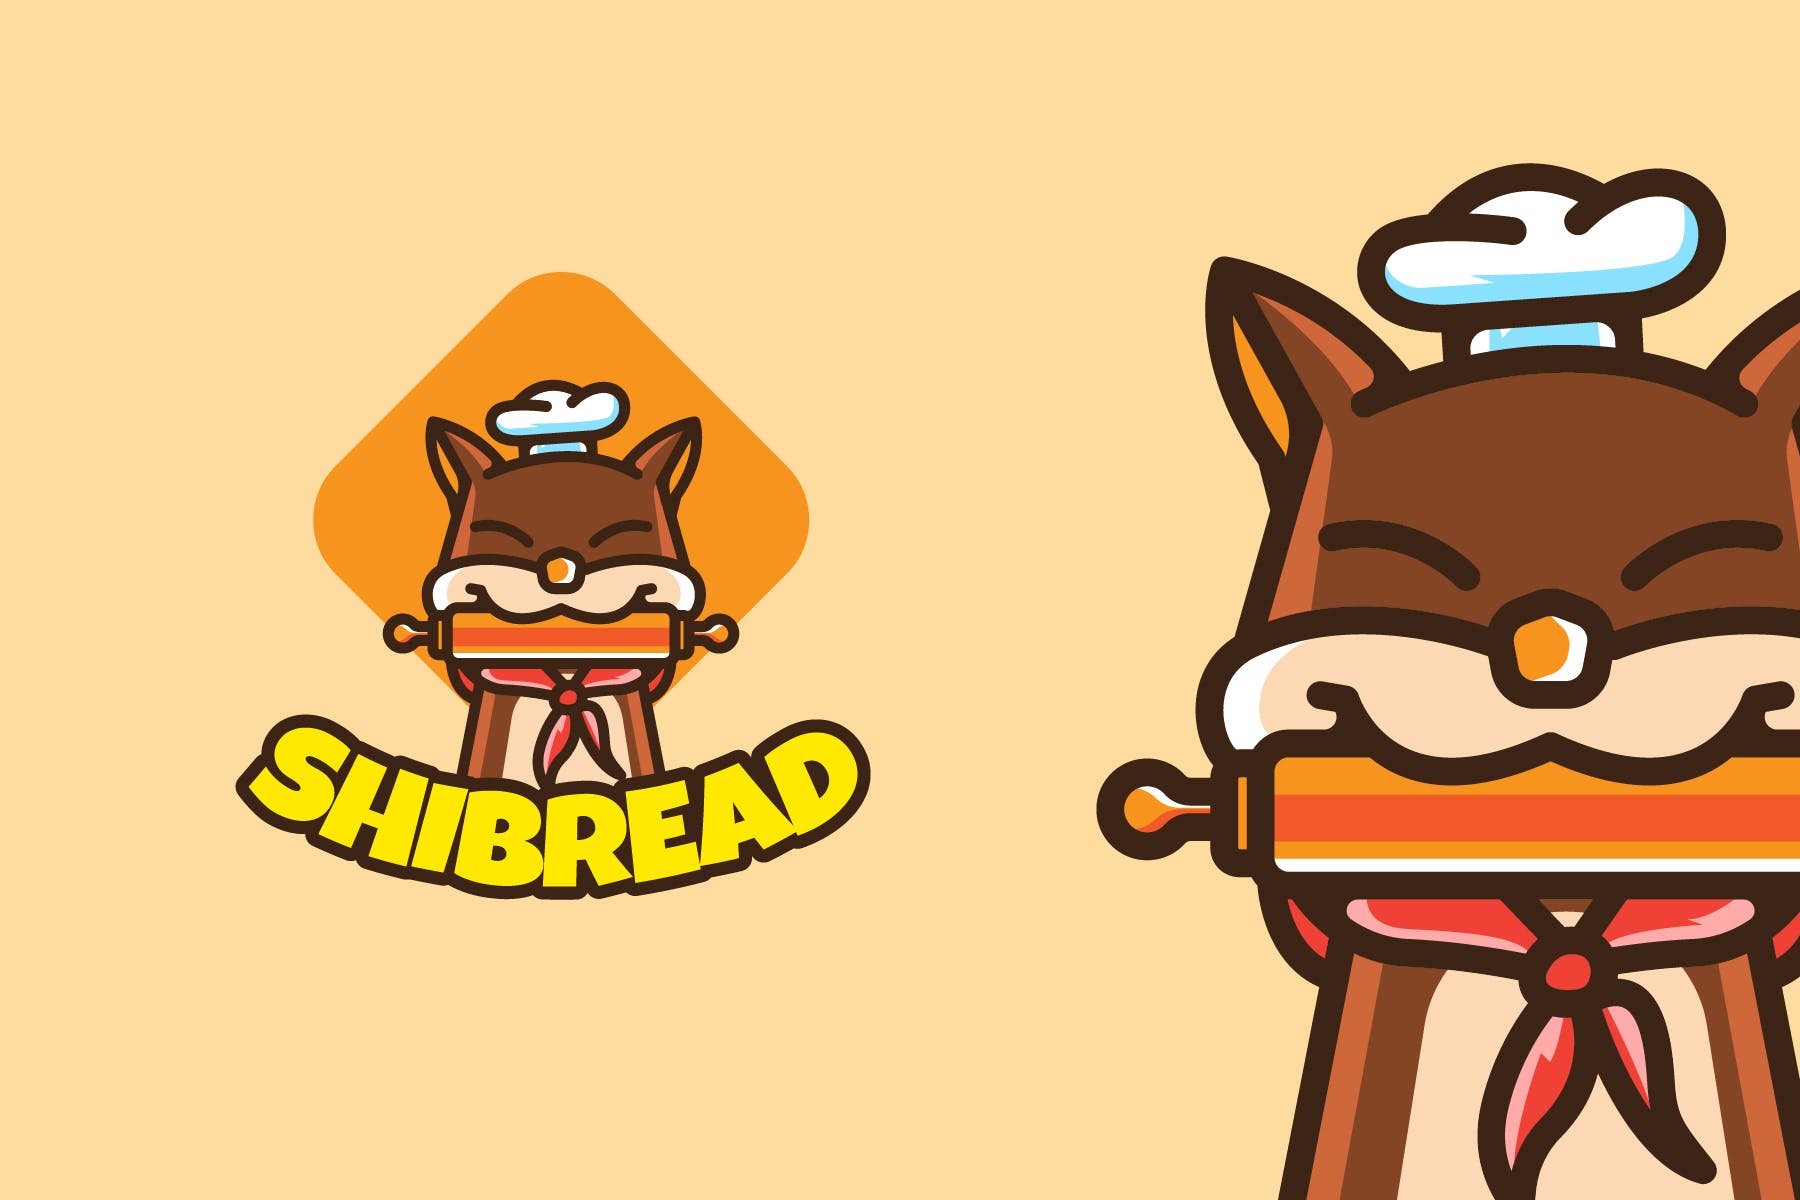 动物厨师卡通形象烘焙面包店Logo设计第一素材精选模板 SHIBA INU BAKERY – Mascot & Esport Logo插图